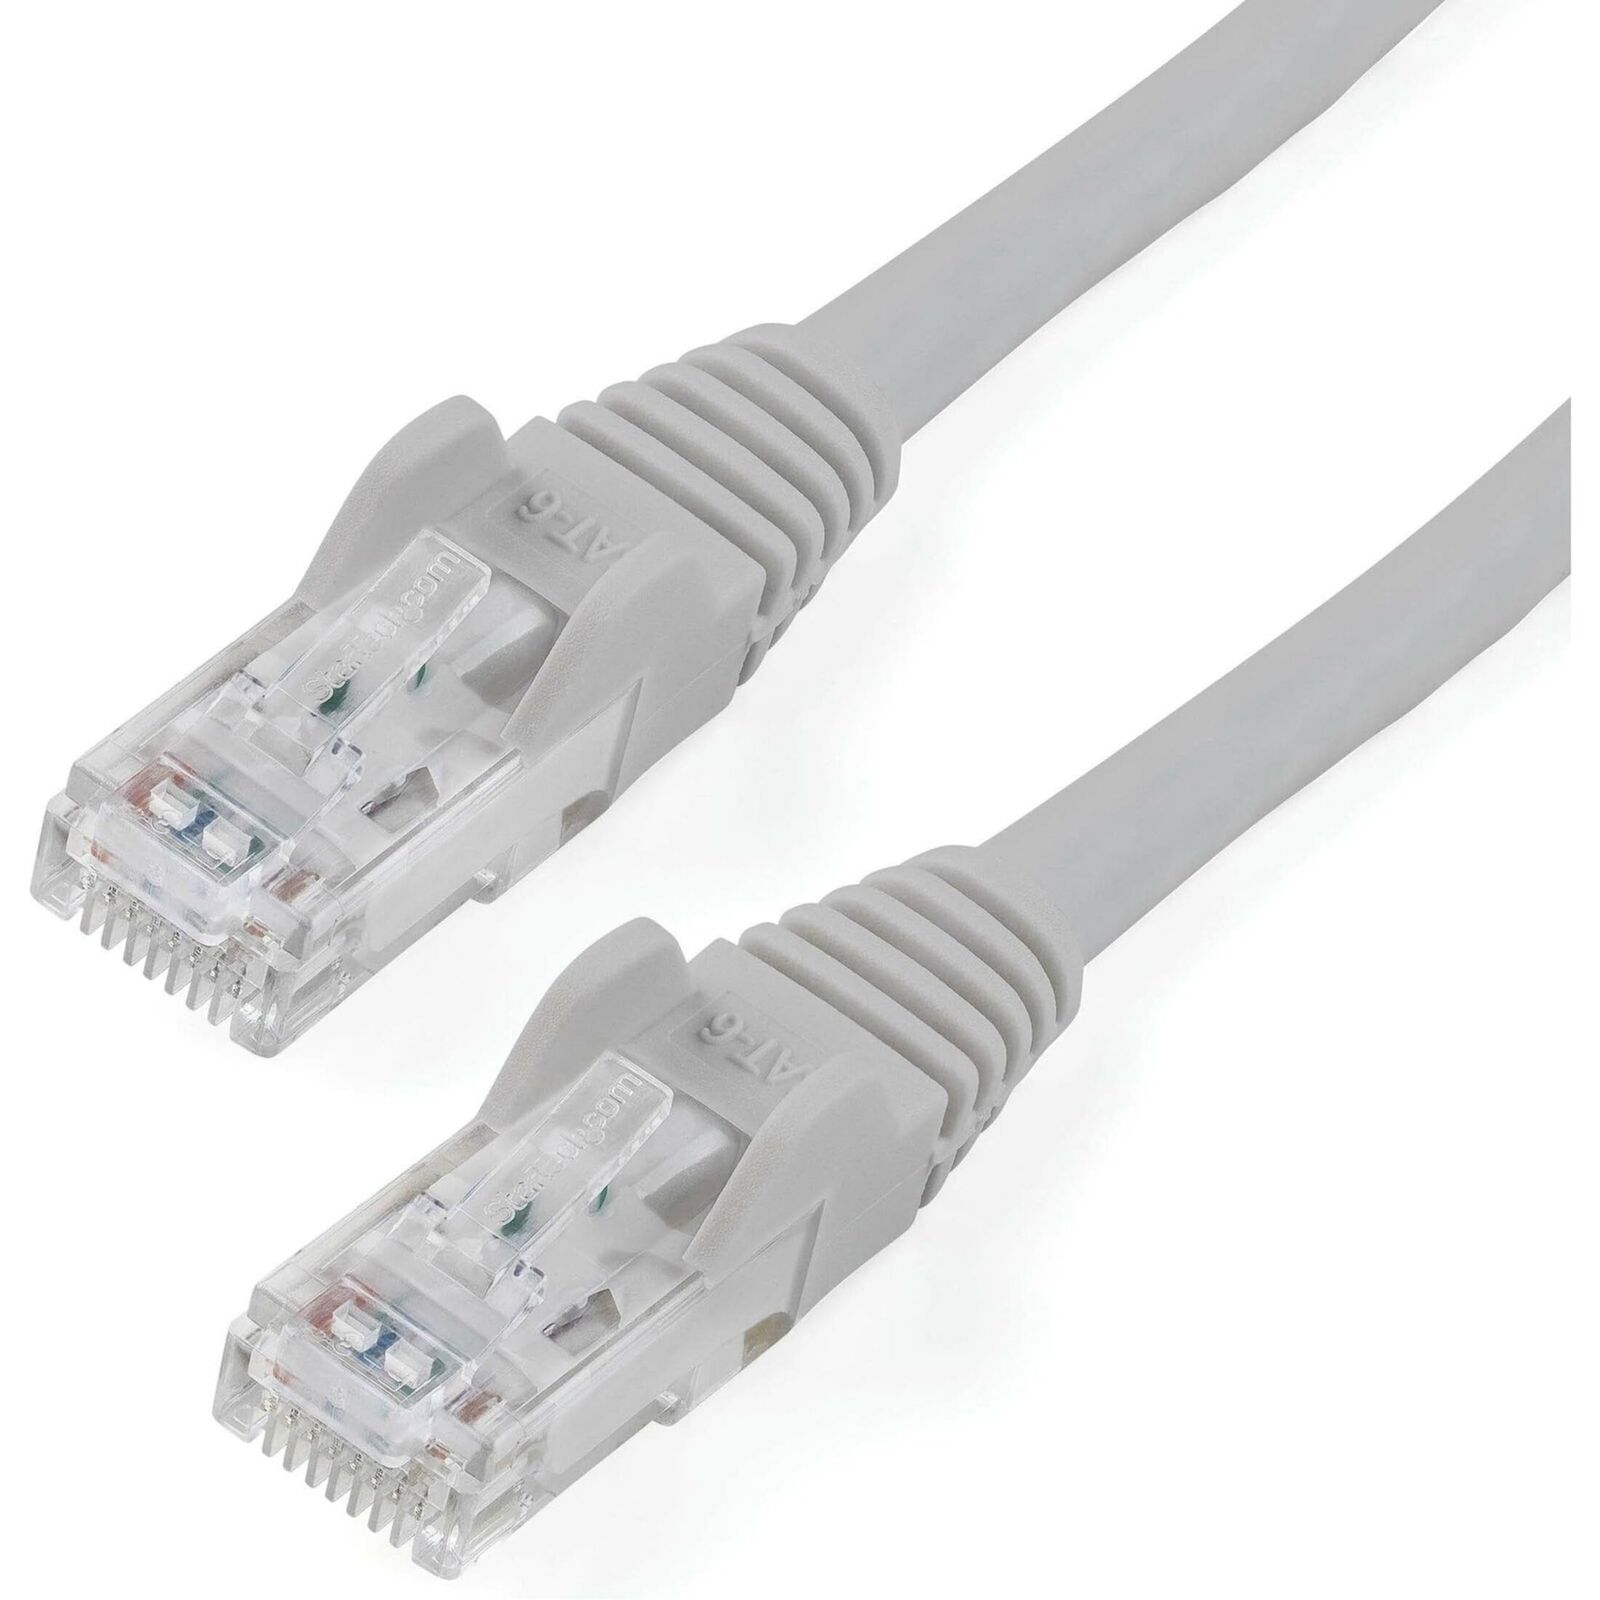 StarTech.com N6PATCH6GR 6 ft. Cat 6 Gray Cat 6 Cables